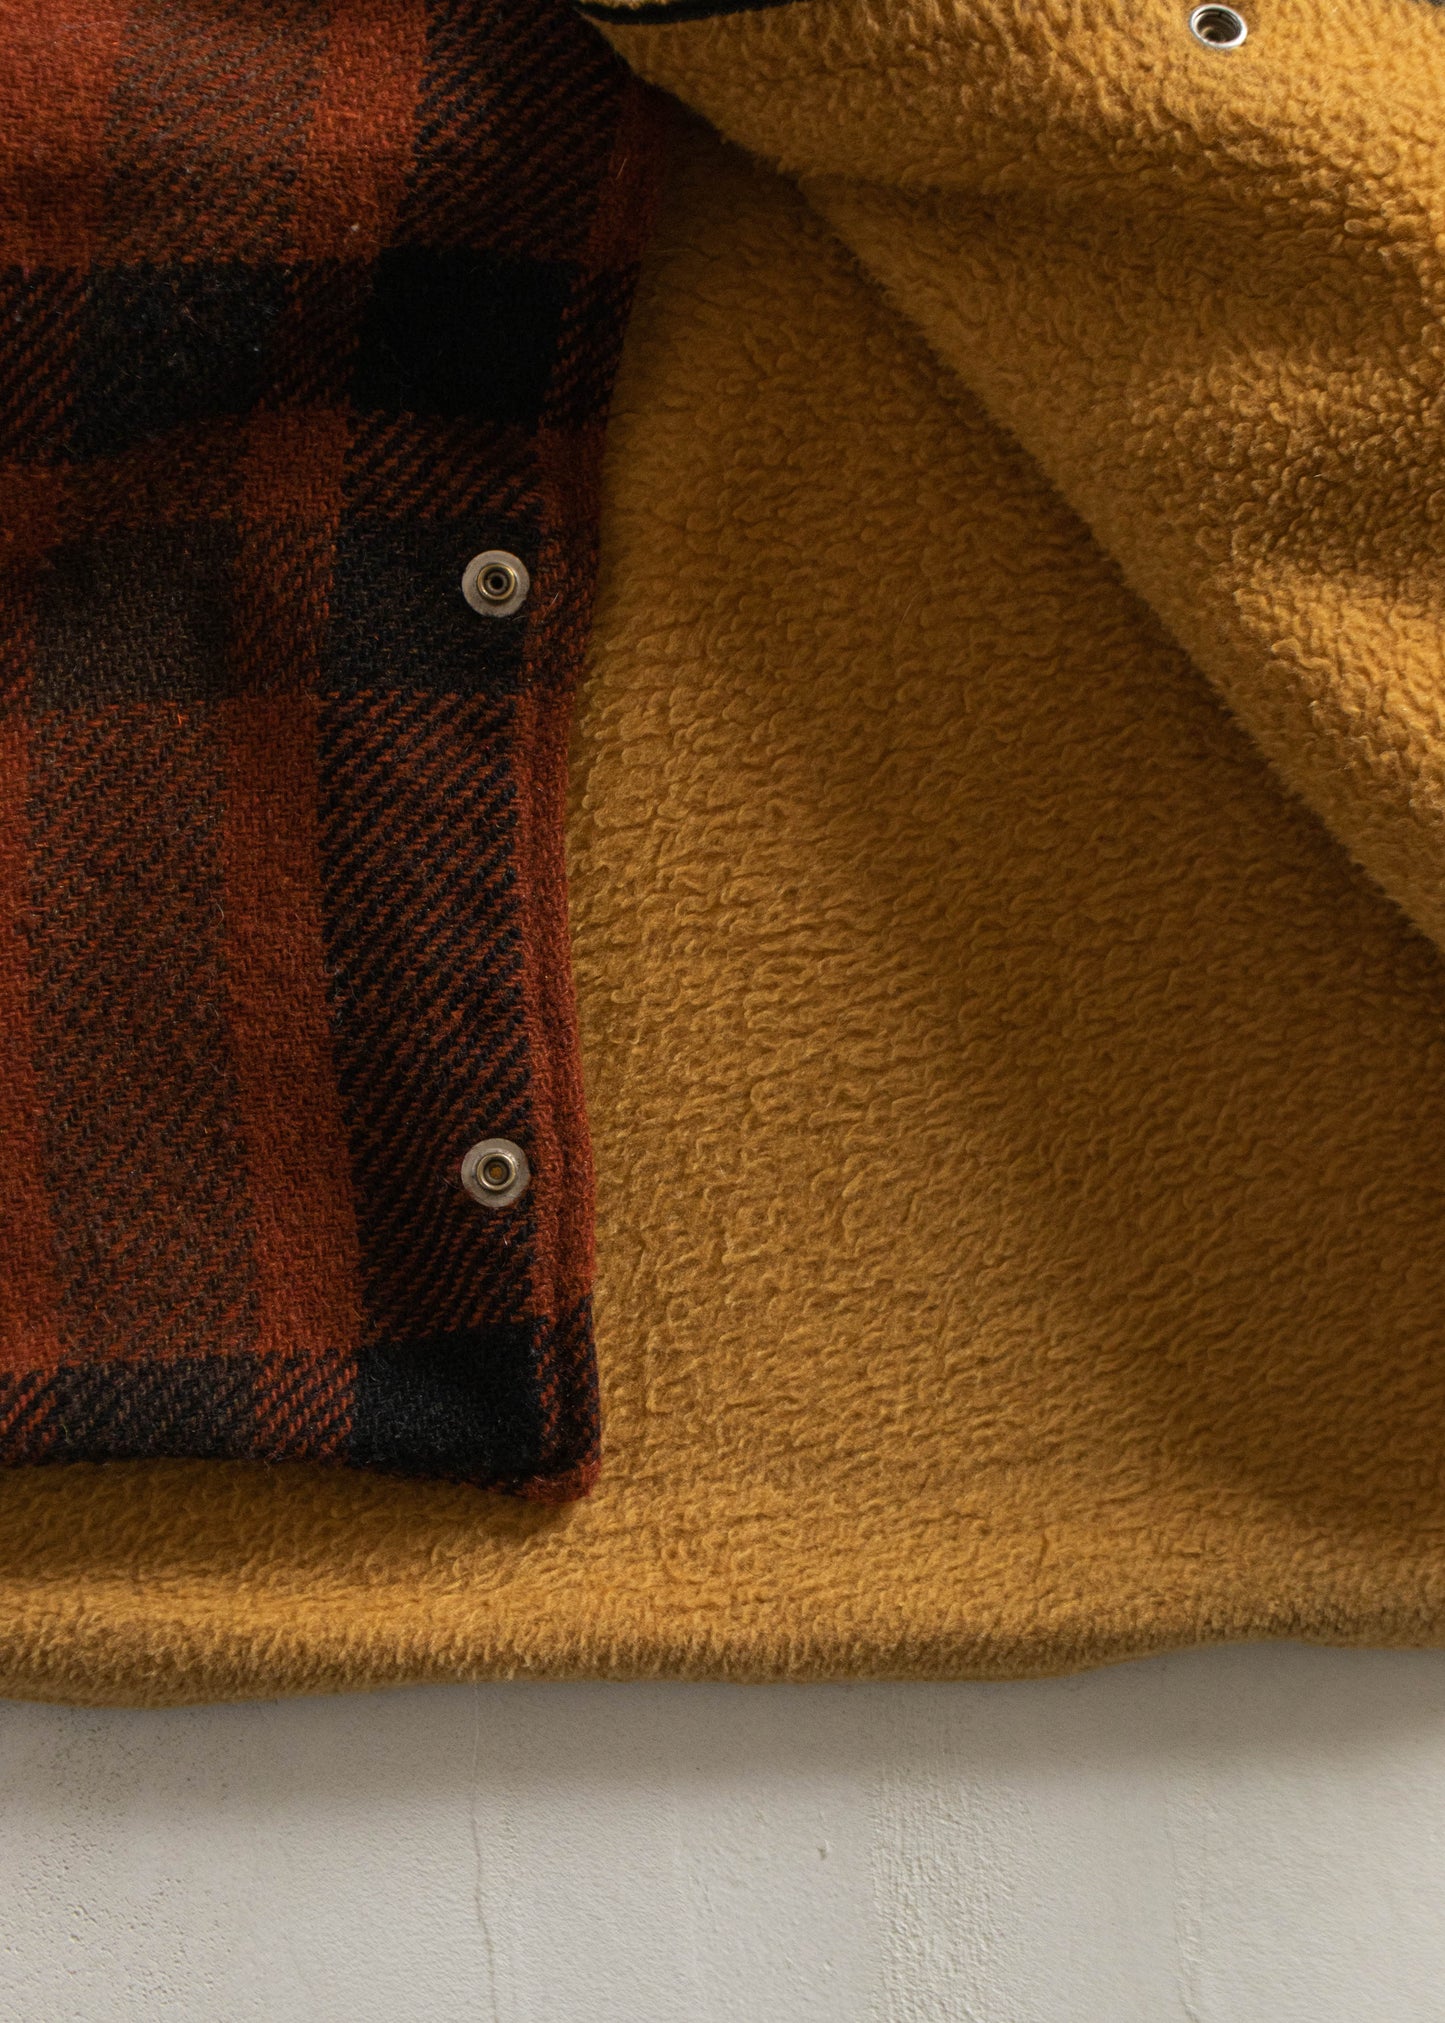 Vintage 1970s Wool Flannel Jacket Size M/L